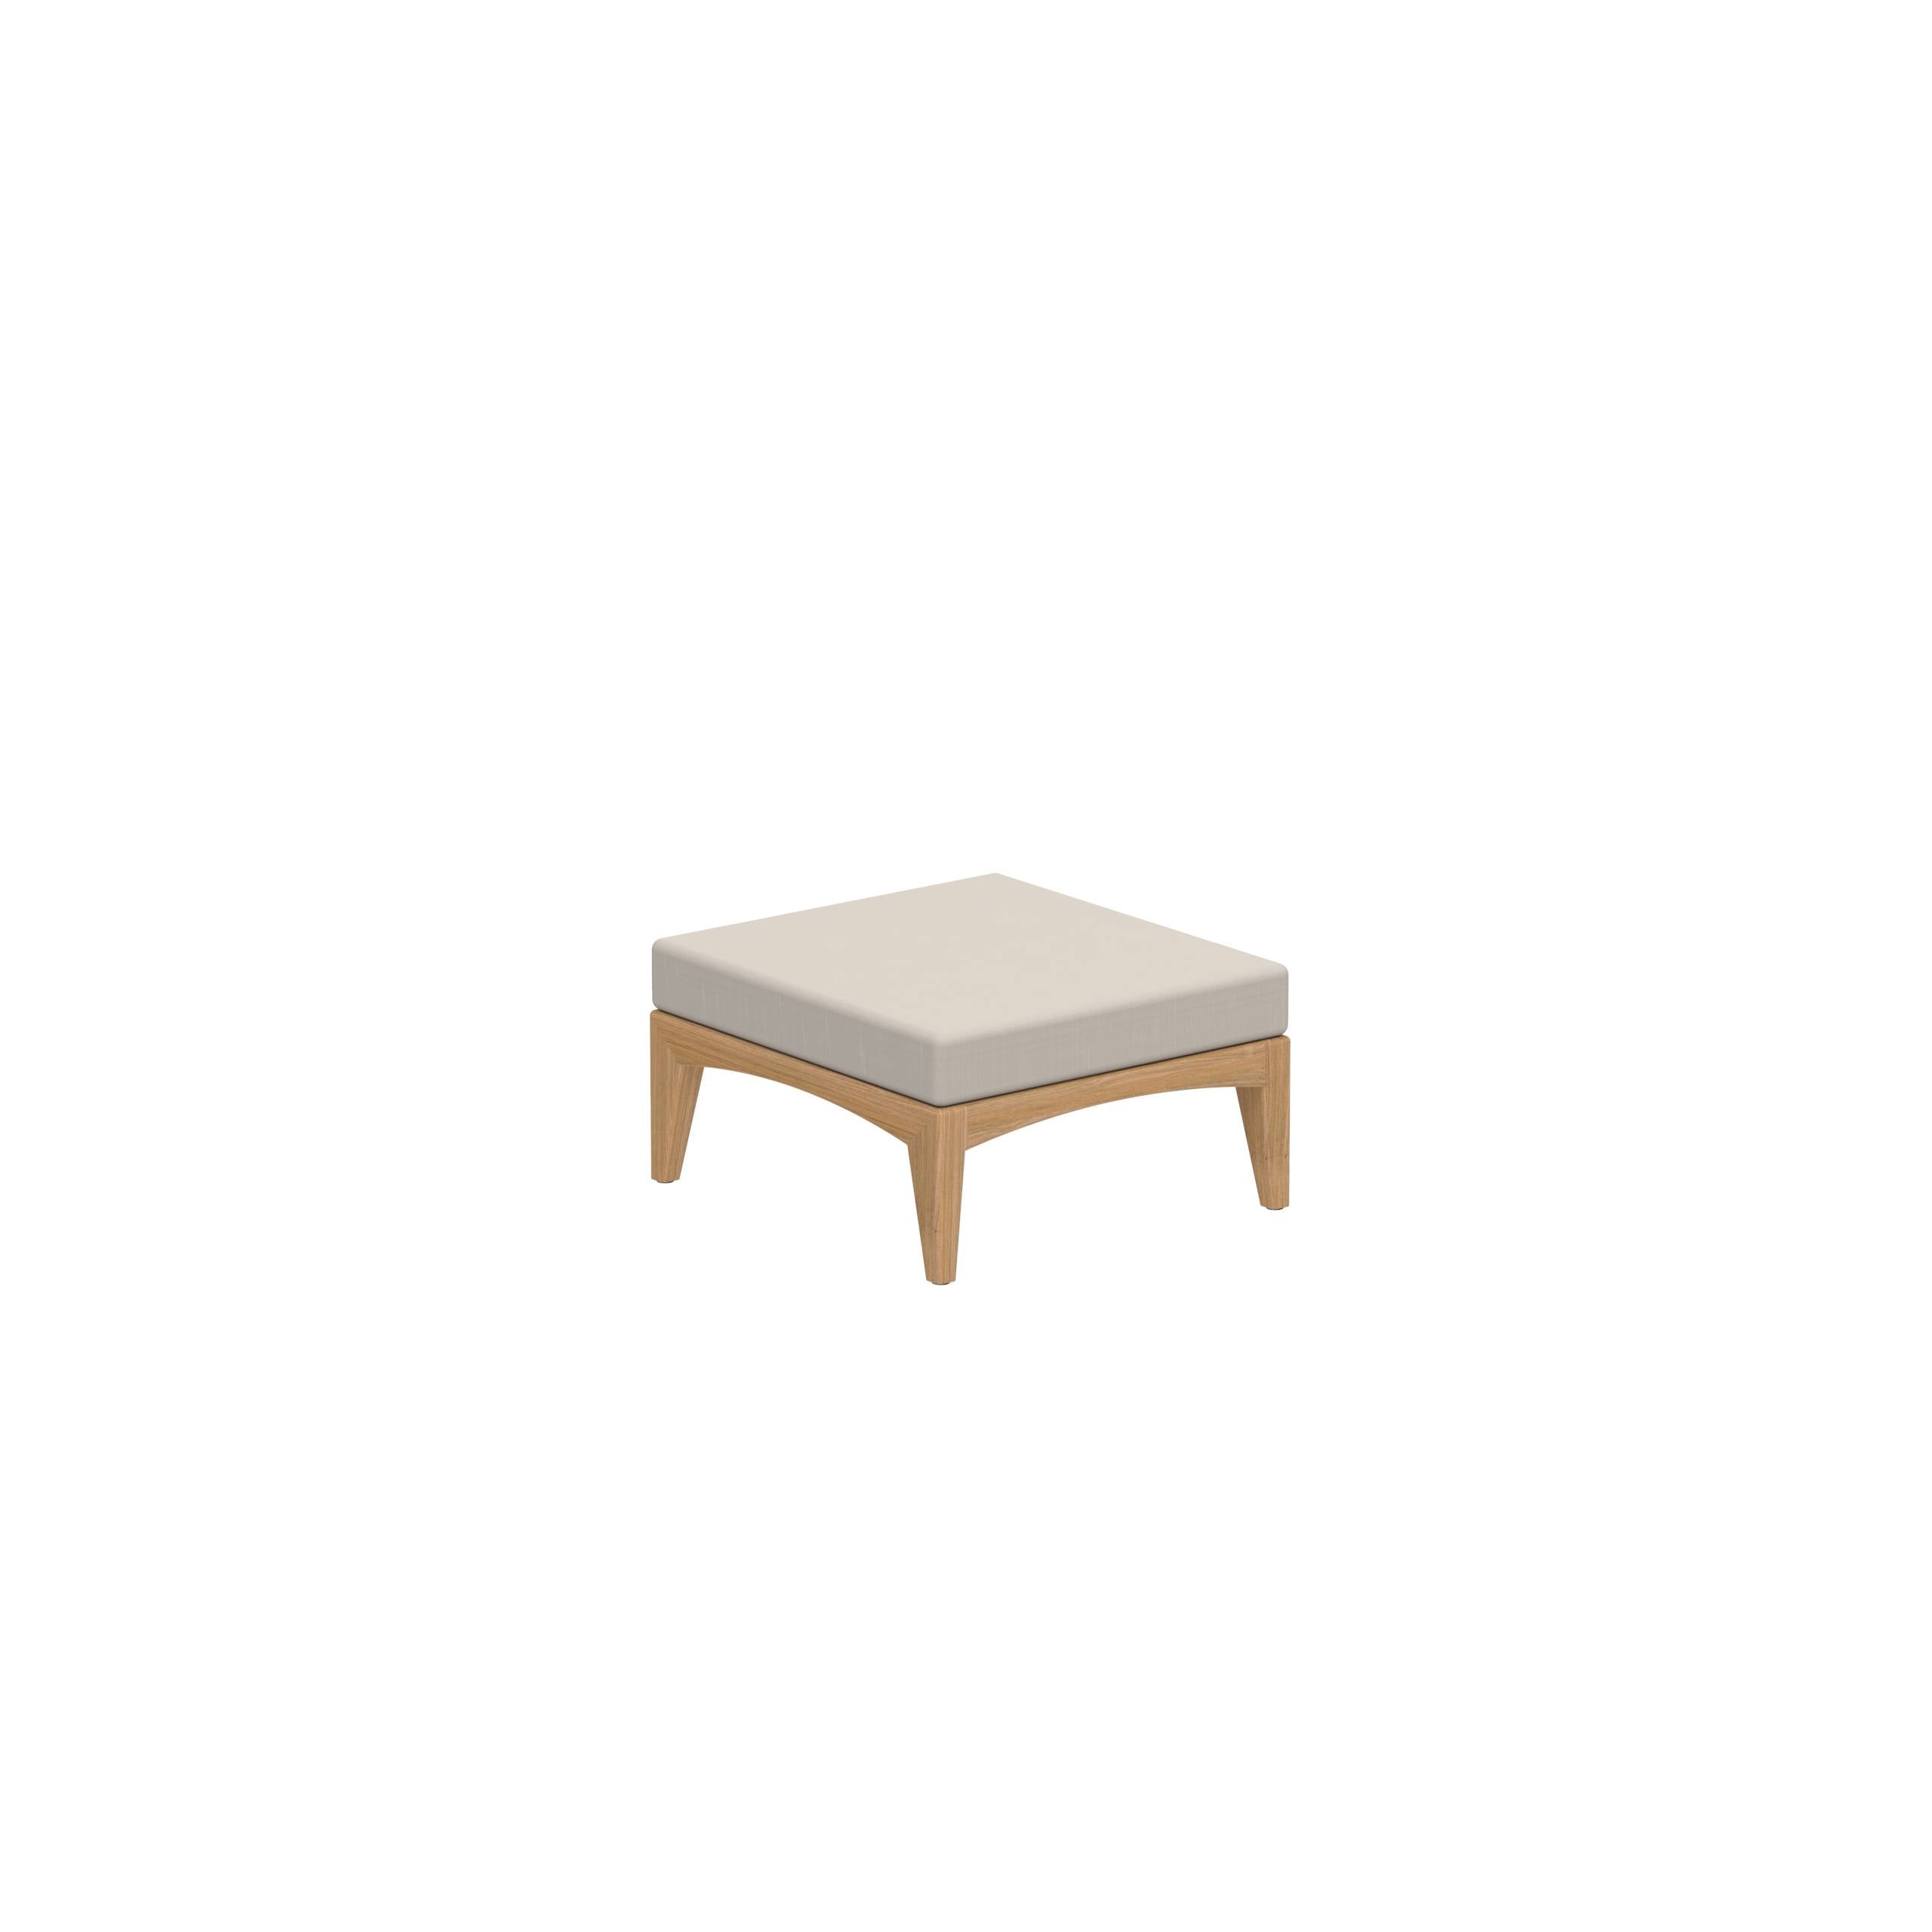 Zenhit Lounge Low Table/Footrest In Teak